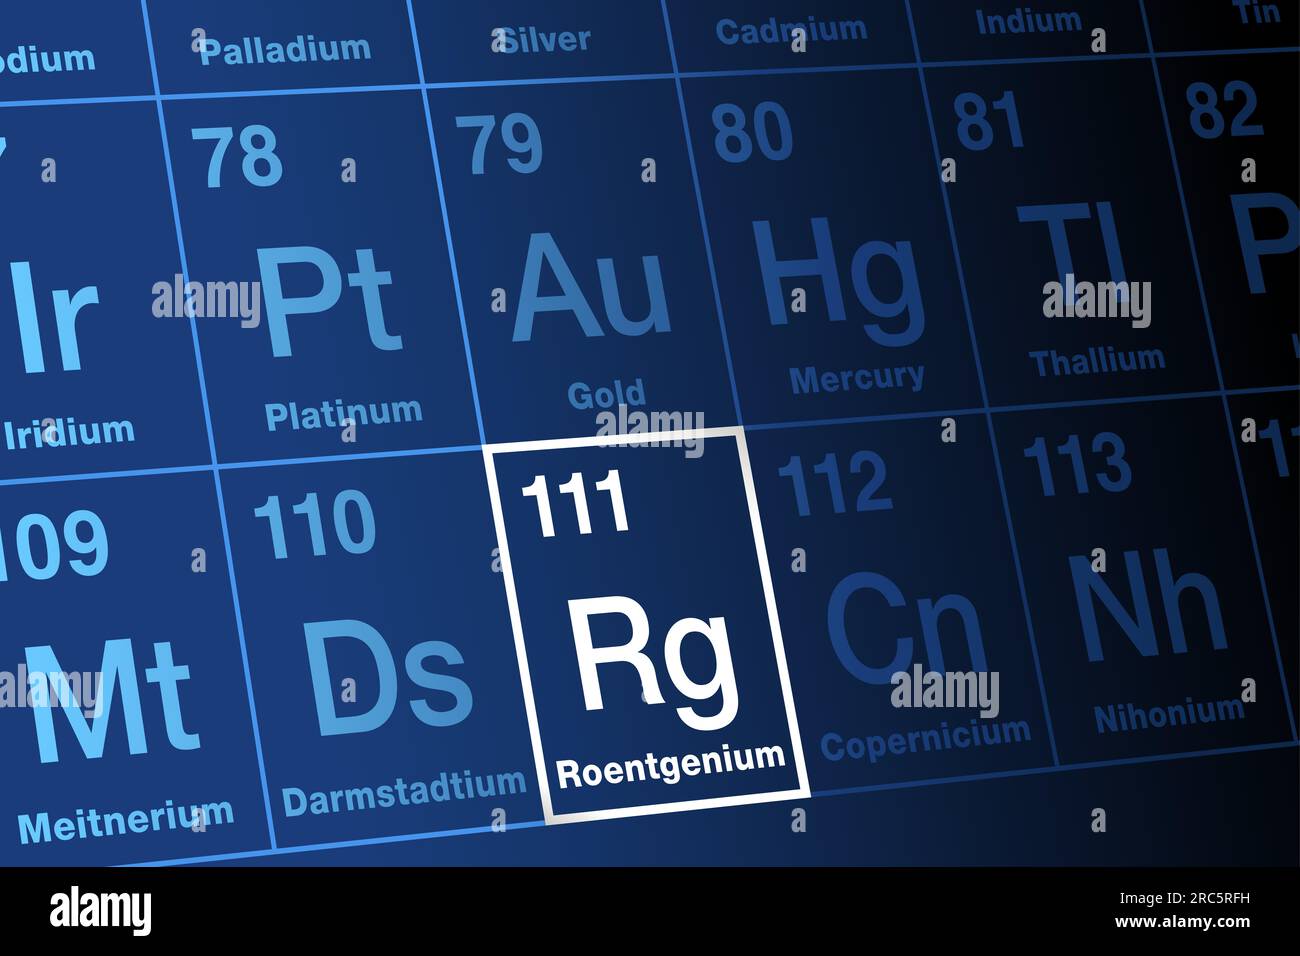 Roentgenium sulla tavola periodica degli elementi. Elemento transactinide sintetico estremamente radioattivo, super pesante, con simbolo dell'elemento RG. Foto Stock